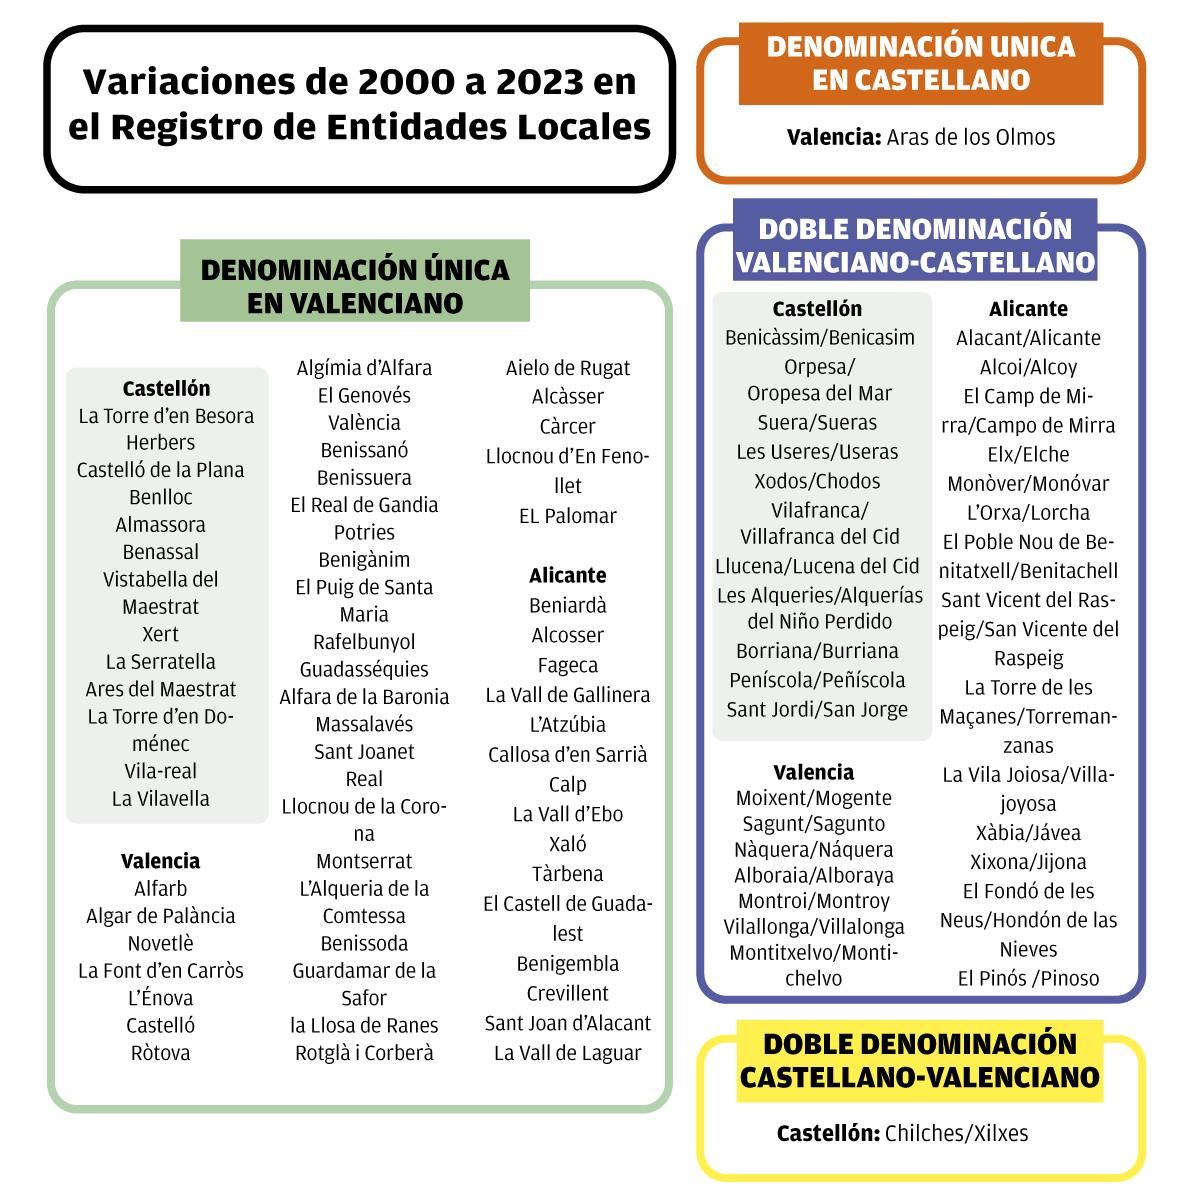 IVariaciones en el Registro de Entidades Locales de 2000 a 2023.